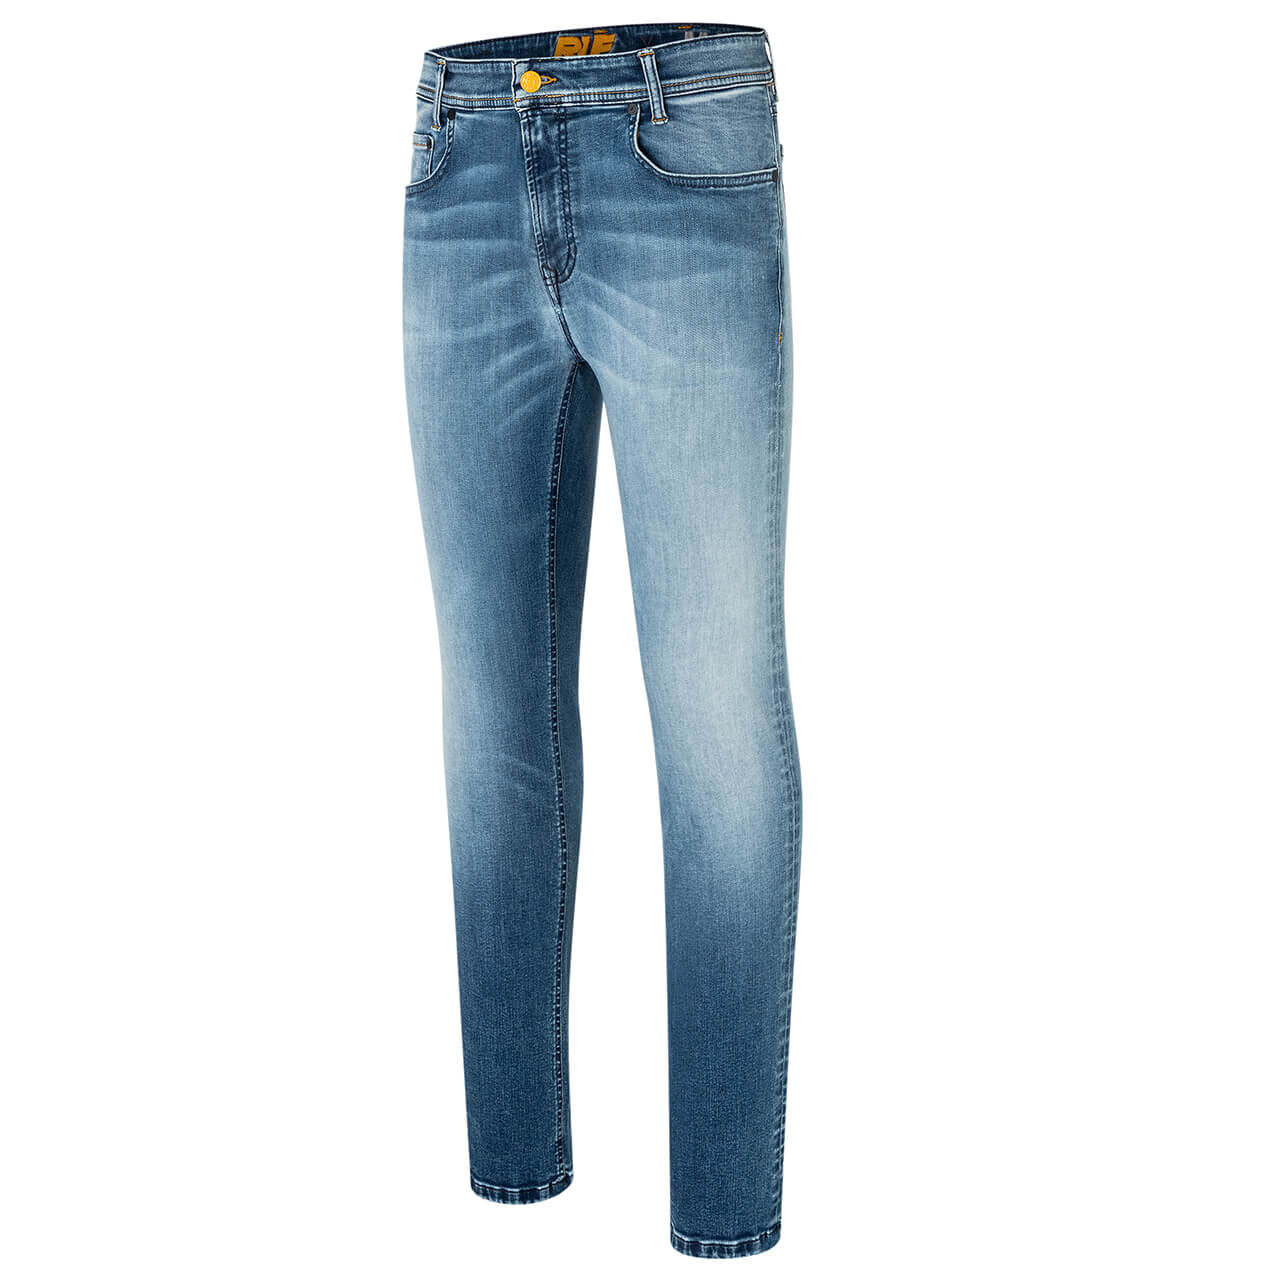 MAC Jeans Flexx für Herren in Hellblau verwaschen, FarbNr.: H239